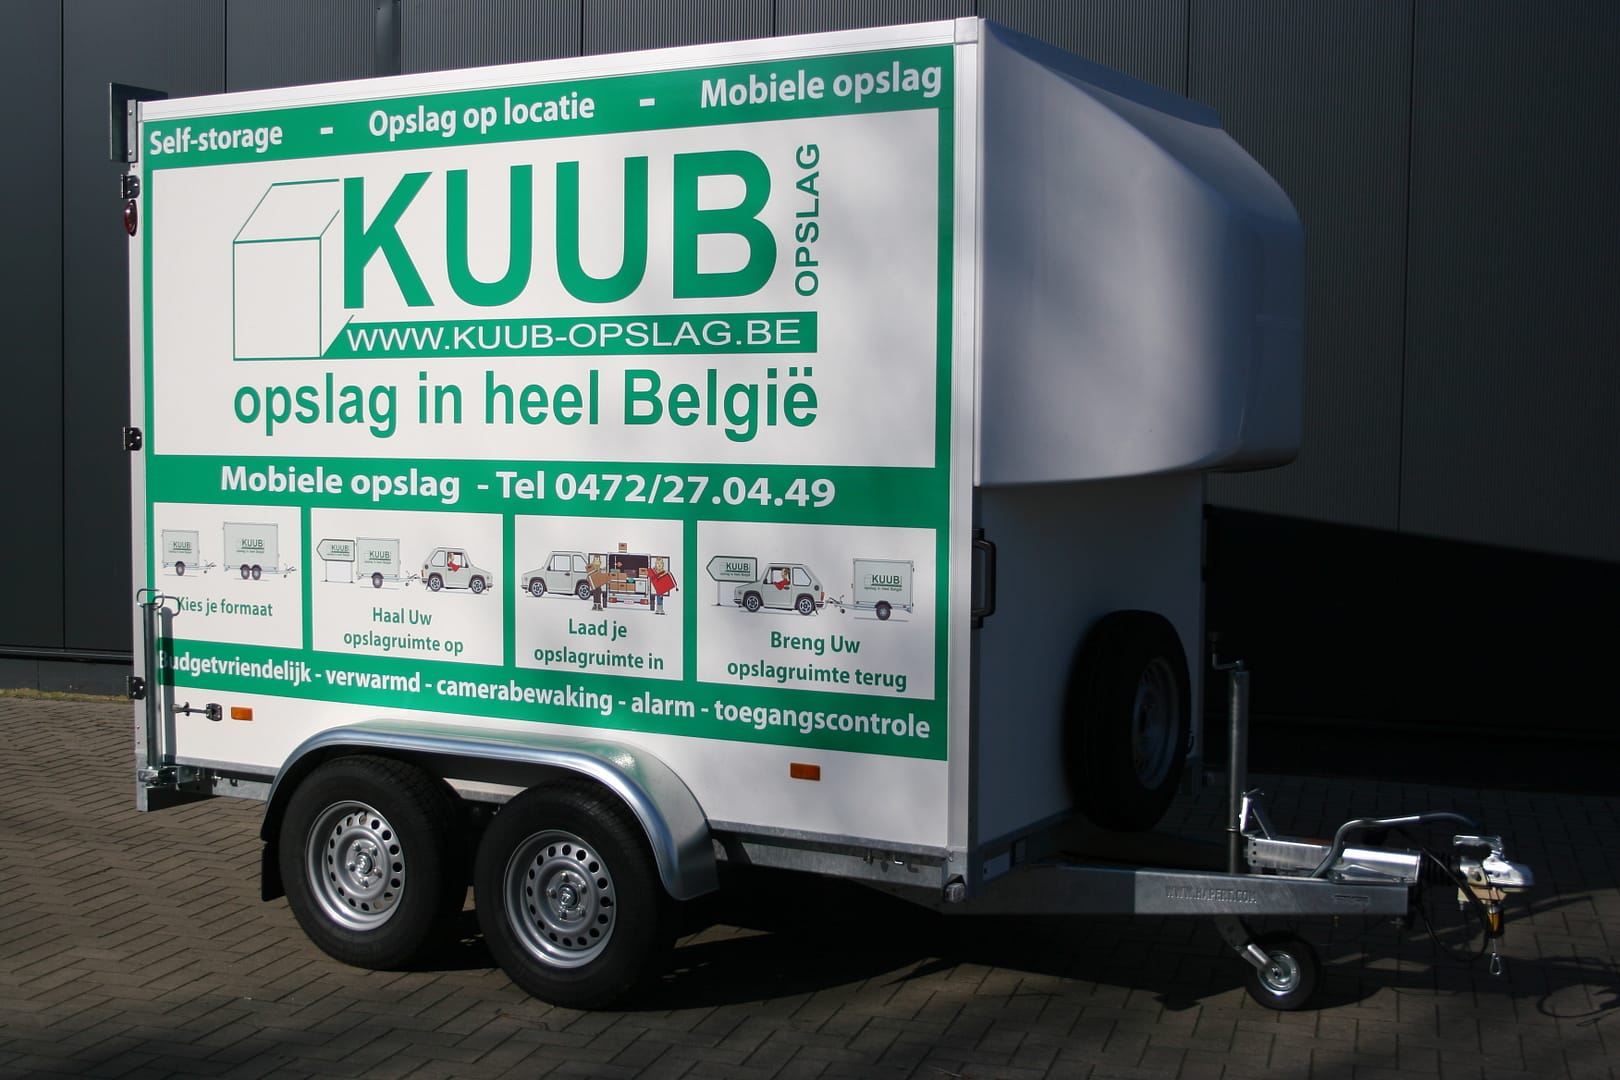 Mobiele Opslagruimte van Kuub is ook beschikbaar in 8 kubieke meter